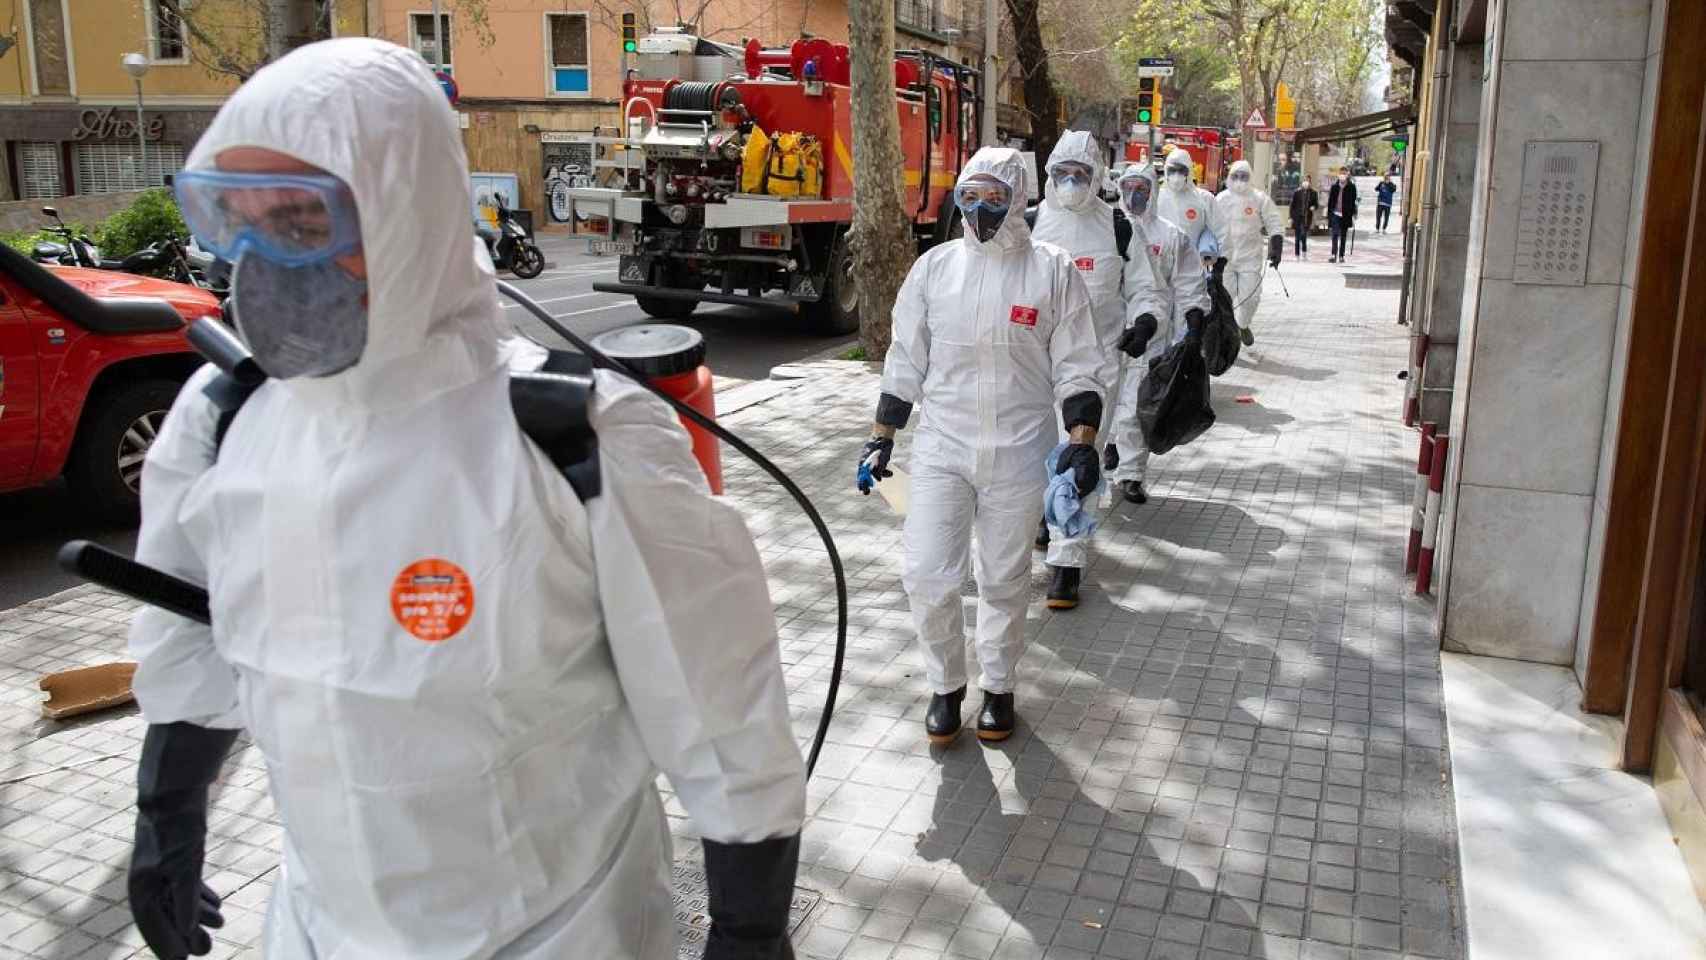 La UME desinfecta una residencia en Cataluña / EUROPA PRESS